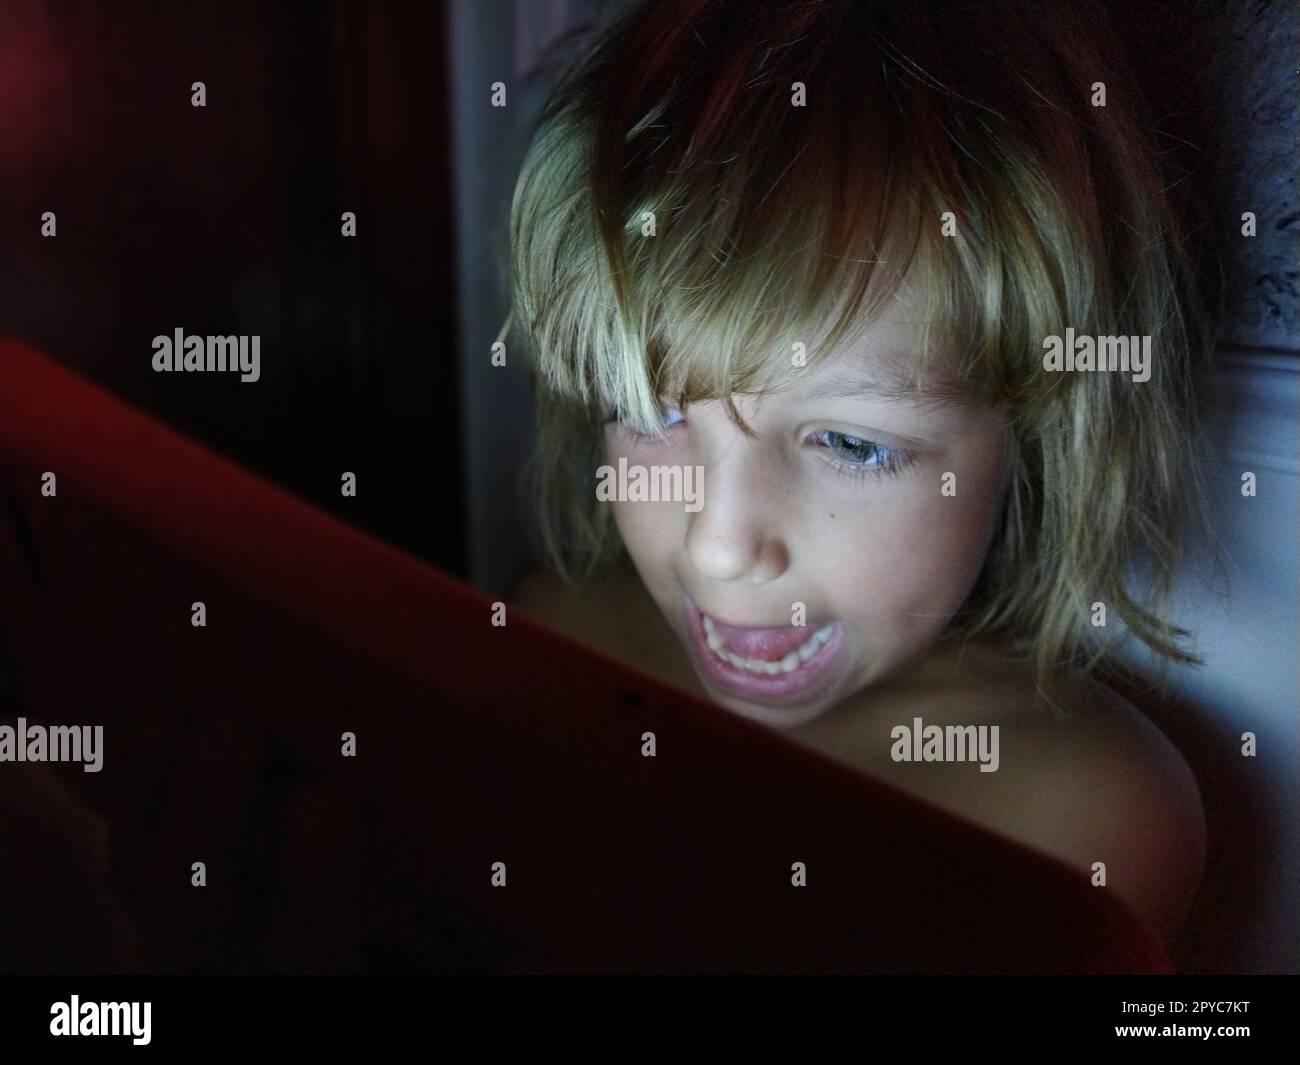 Süßes kleines Mädchen spielt mit einem Tablet-Computer. Ein 7-jähriges Kind mit lächelndem Gesicht und blondem Haar sieht in ein Gerät. Speicherplatz kopieren. Mädchen im Zimmer. Dunkle und helle Wand. Abends zu Hause Stockfoto